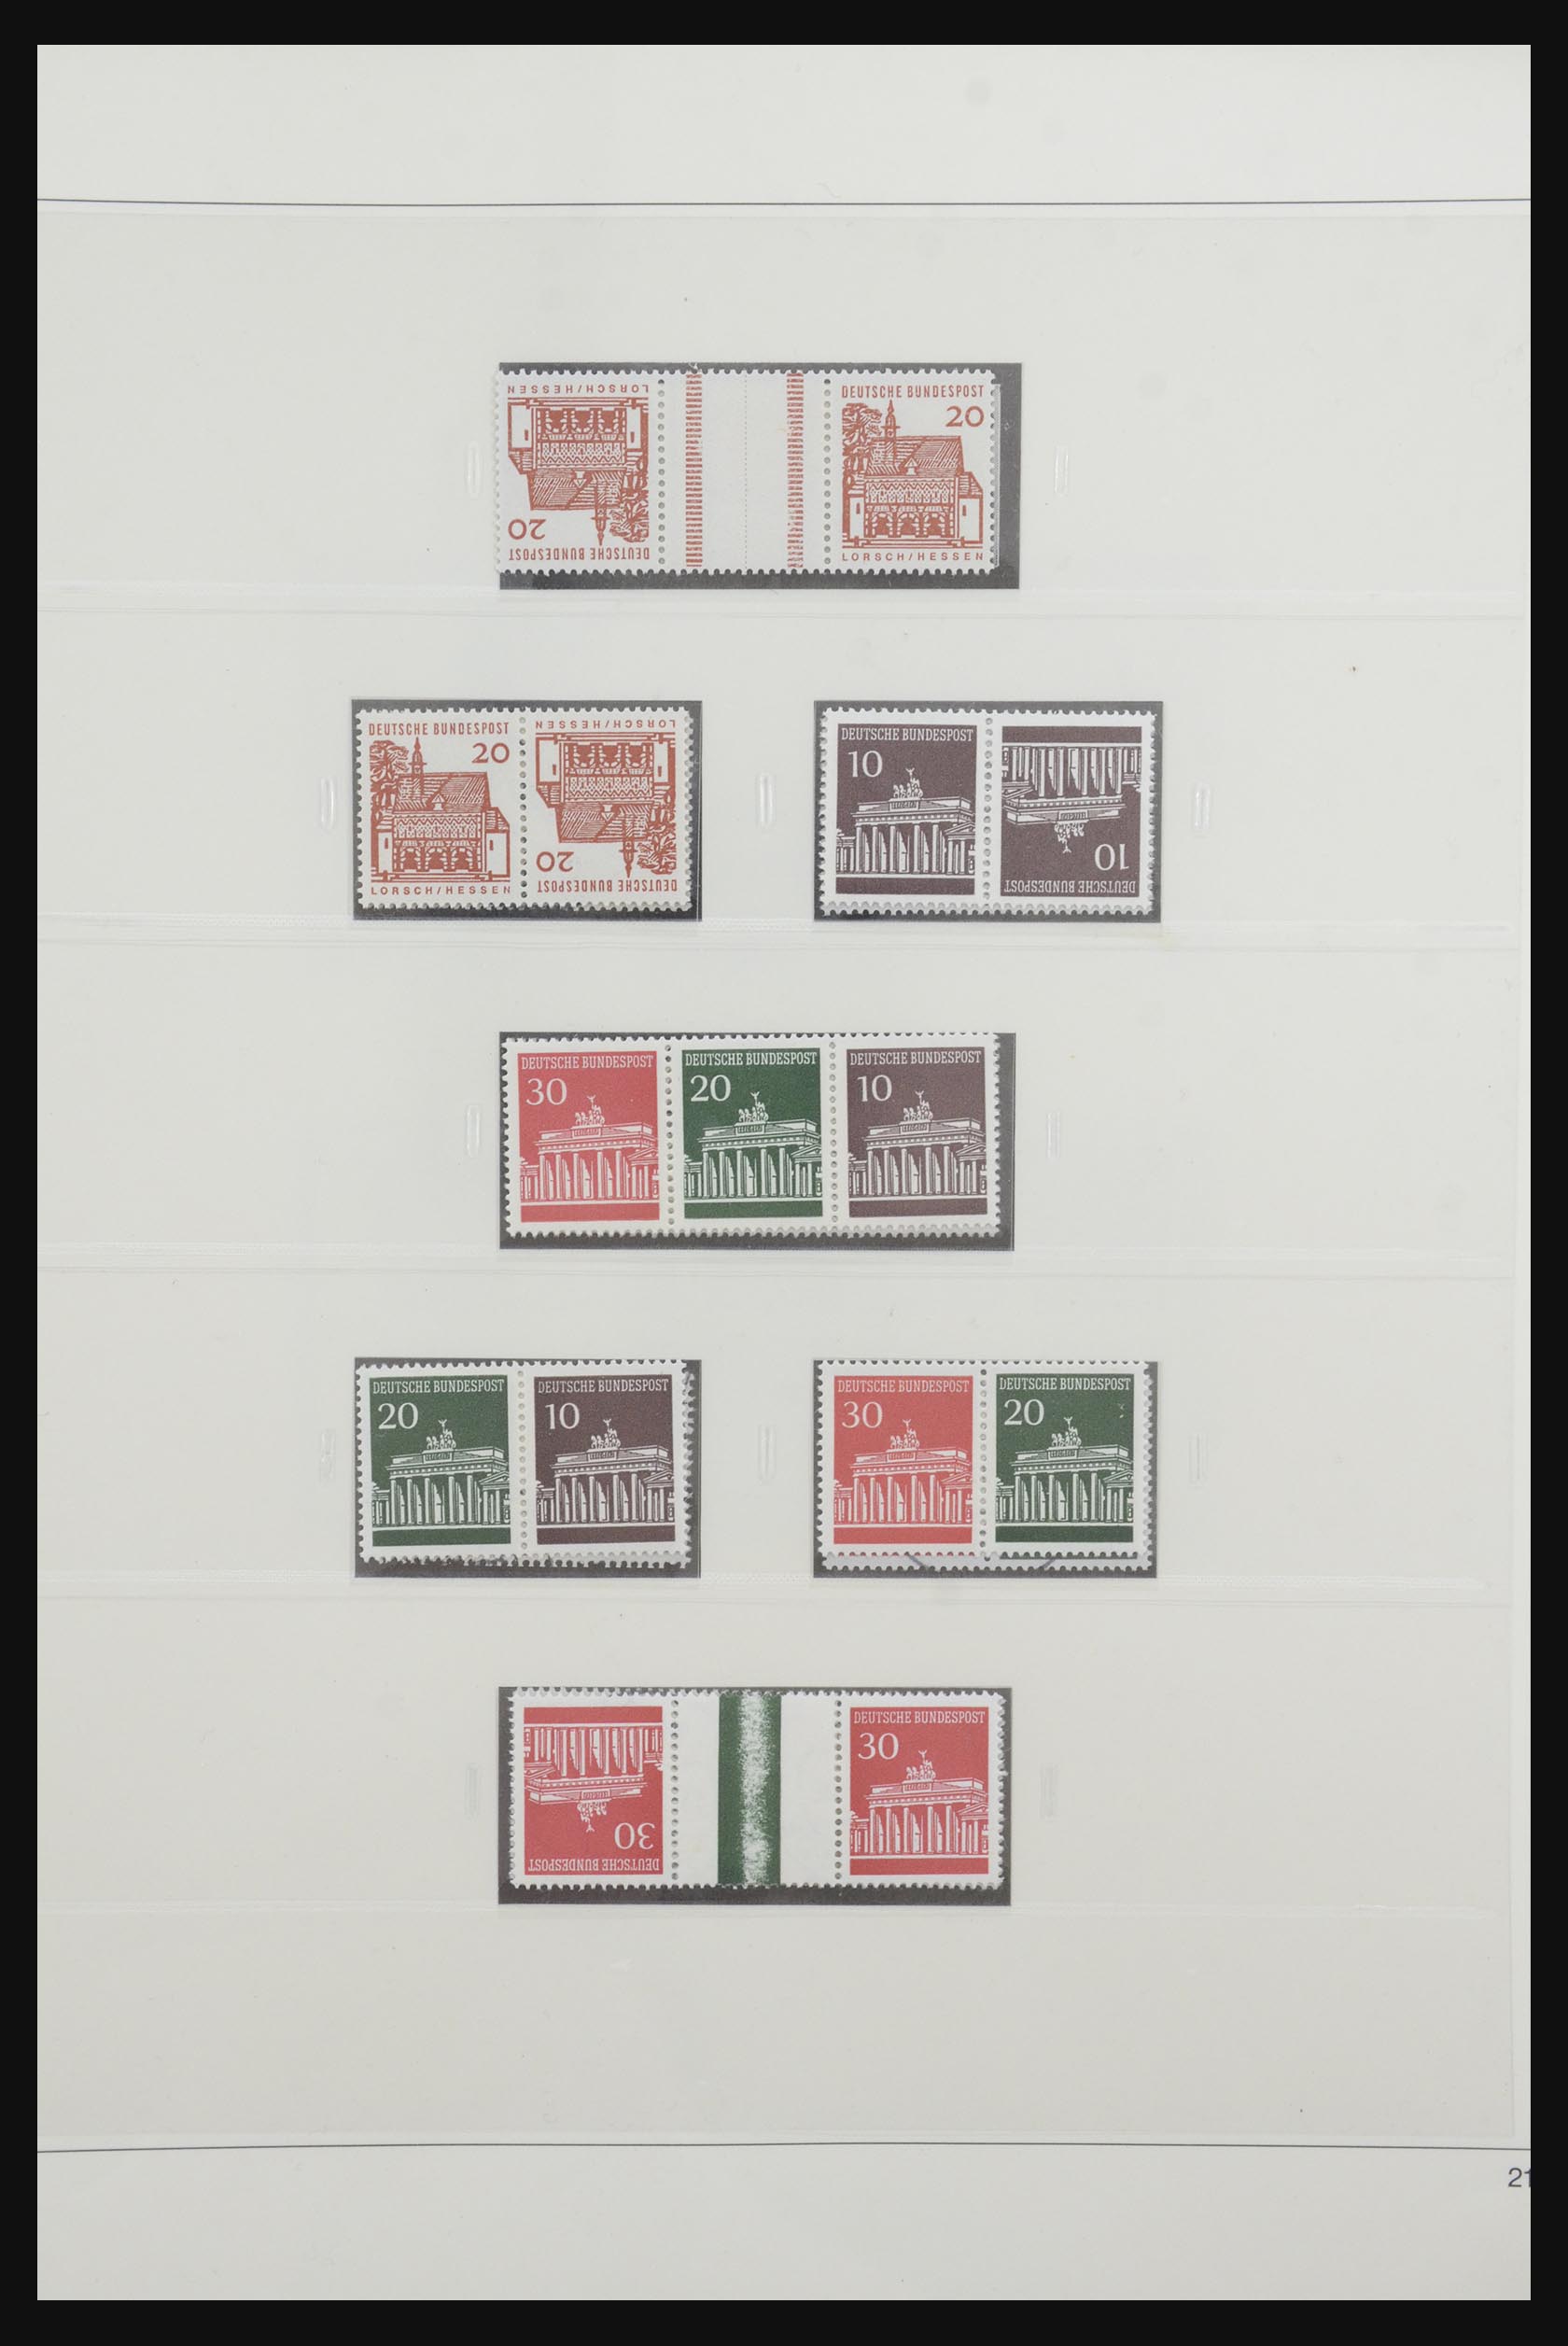 31842 028 - 31842 Bundespost combinations 1951-2003.